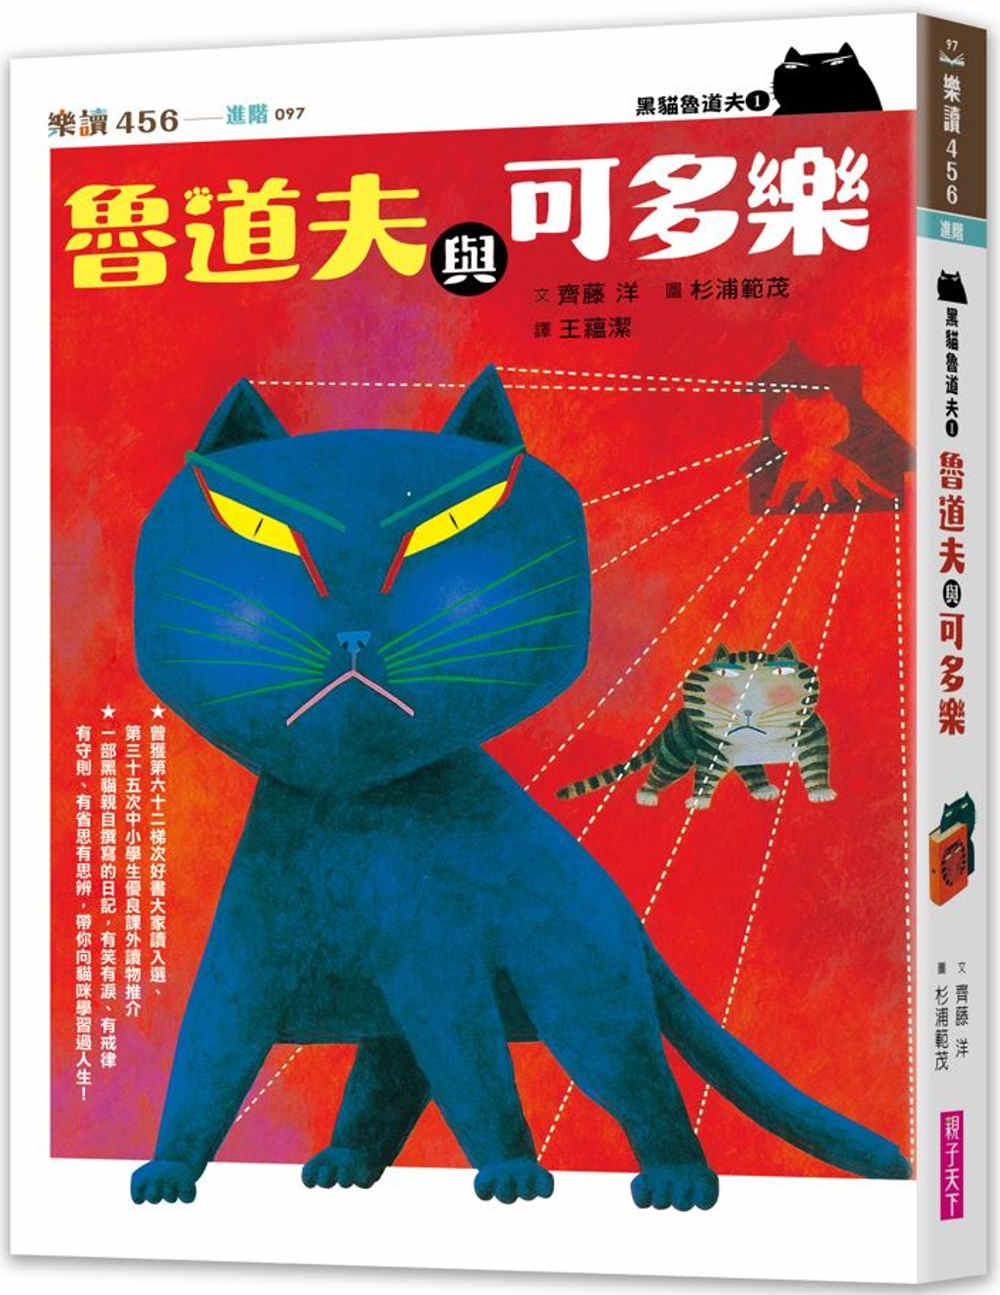 黑貓魯道夫1：魯道夫與可多樂(暢銷百萬國民童書上市10週年紀念版)